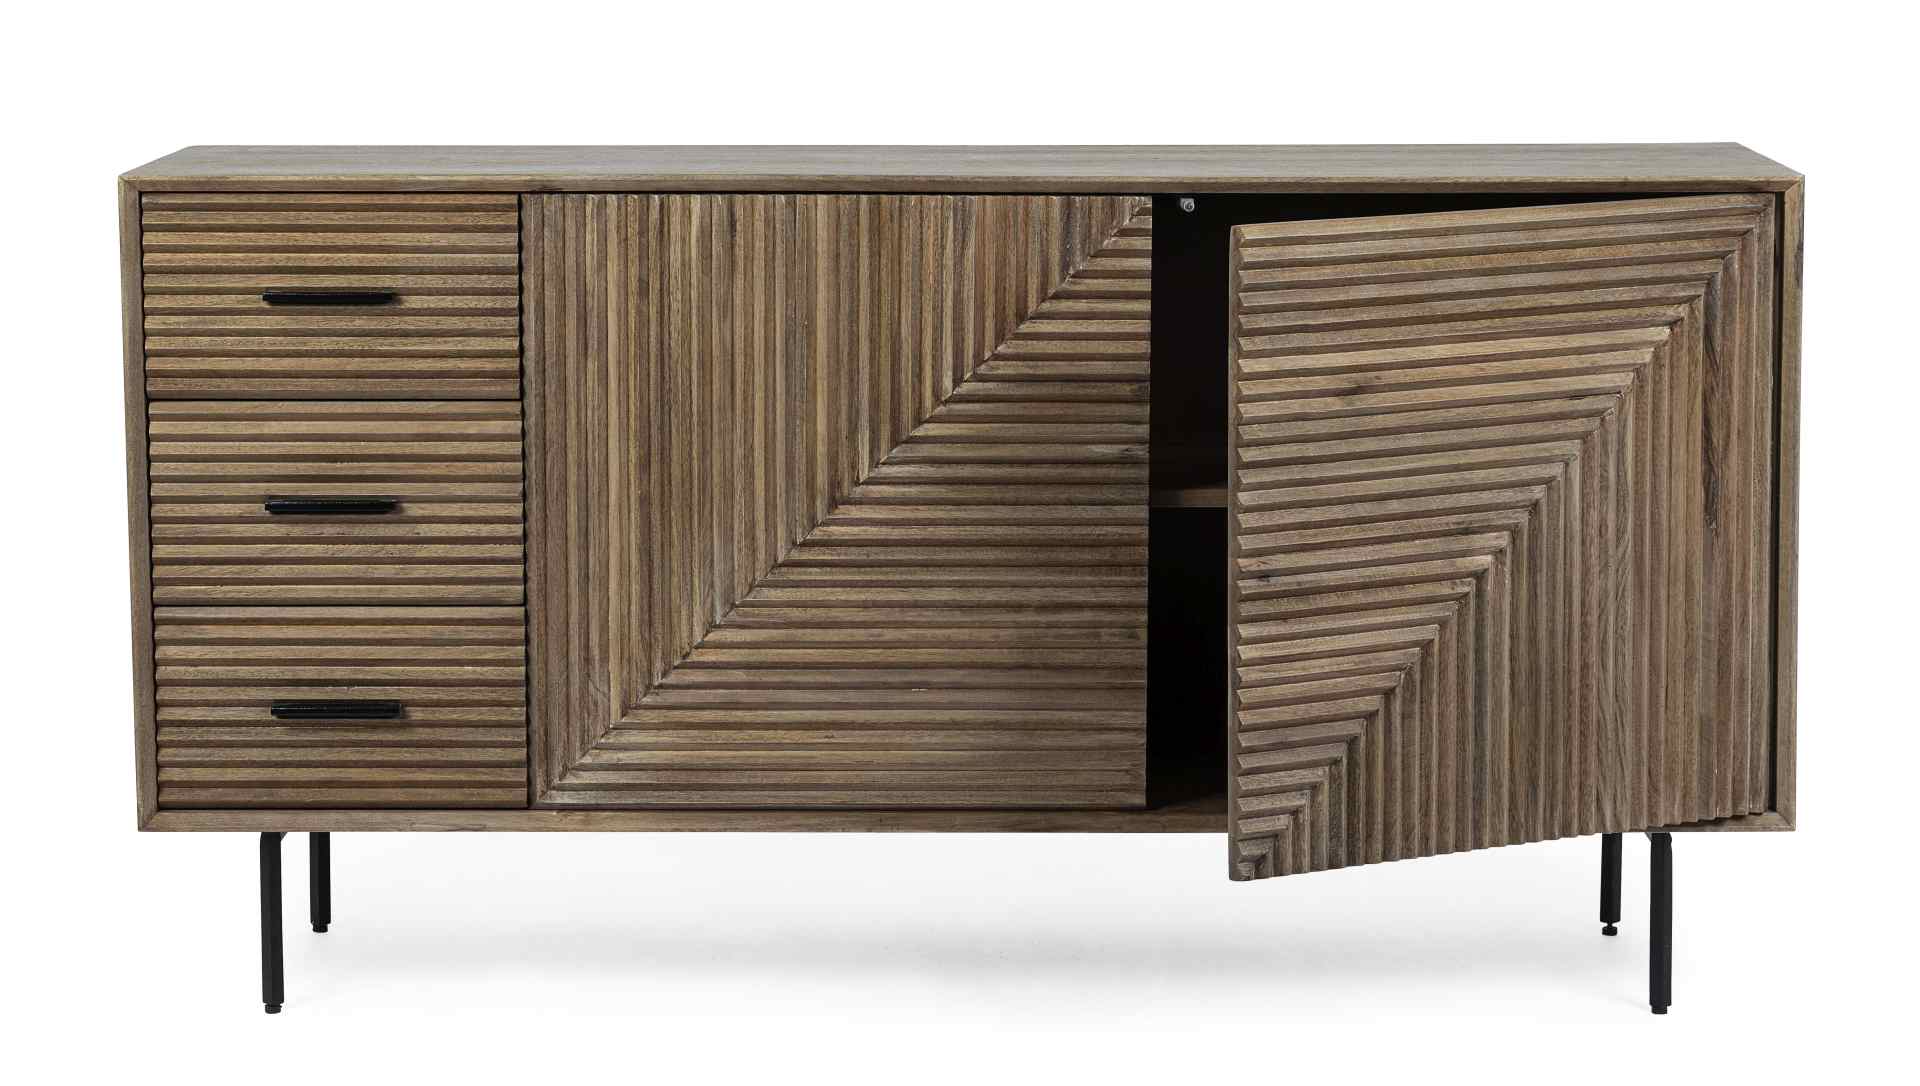 Das Sideboard Darsey überzeugt mit seinem klassischen Design. Gefertigt wurde es aus Mango-Holz, welches einen natürlichen Farbton besitzt. Das Gestell ist aus Metall und hat eine schwarze Farbe. Das Sideboard verfügt über zwei Türen und drei Schubladen. 